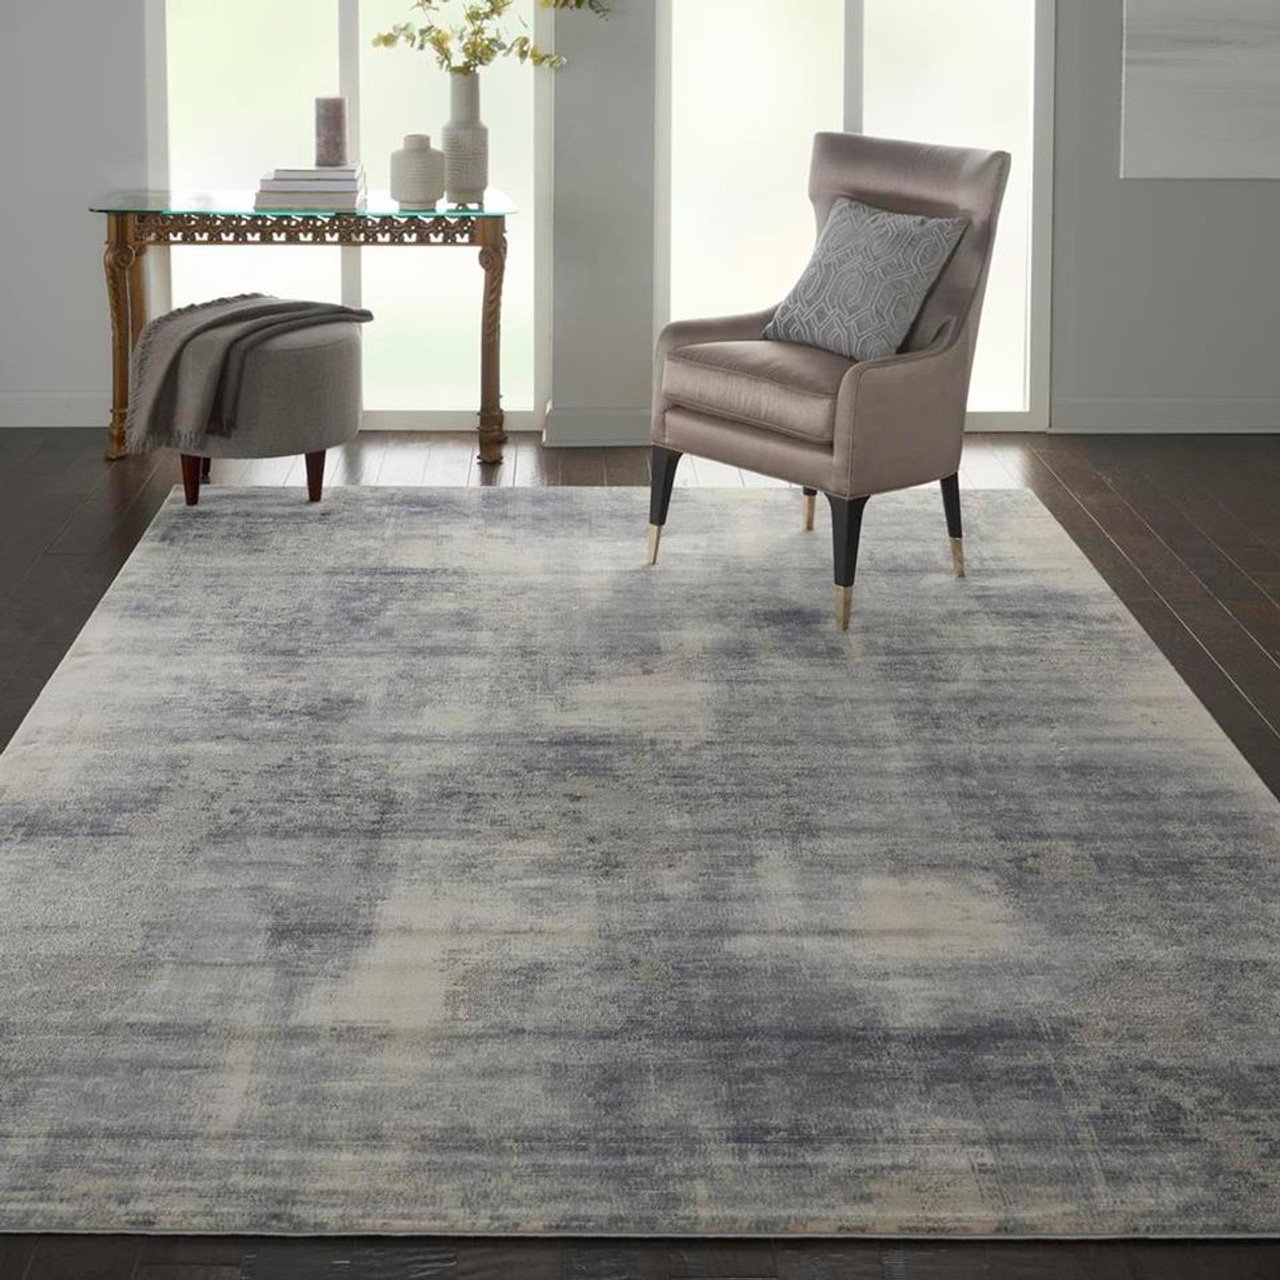 & RUS02 Textures Rug Rustic Carpet - Blue/Ivory Tile Nourison Area - Carpetmart.com Mart